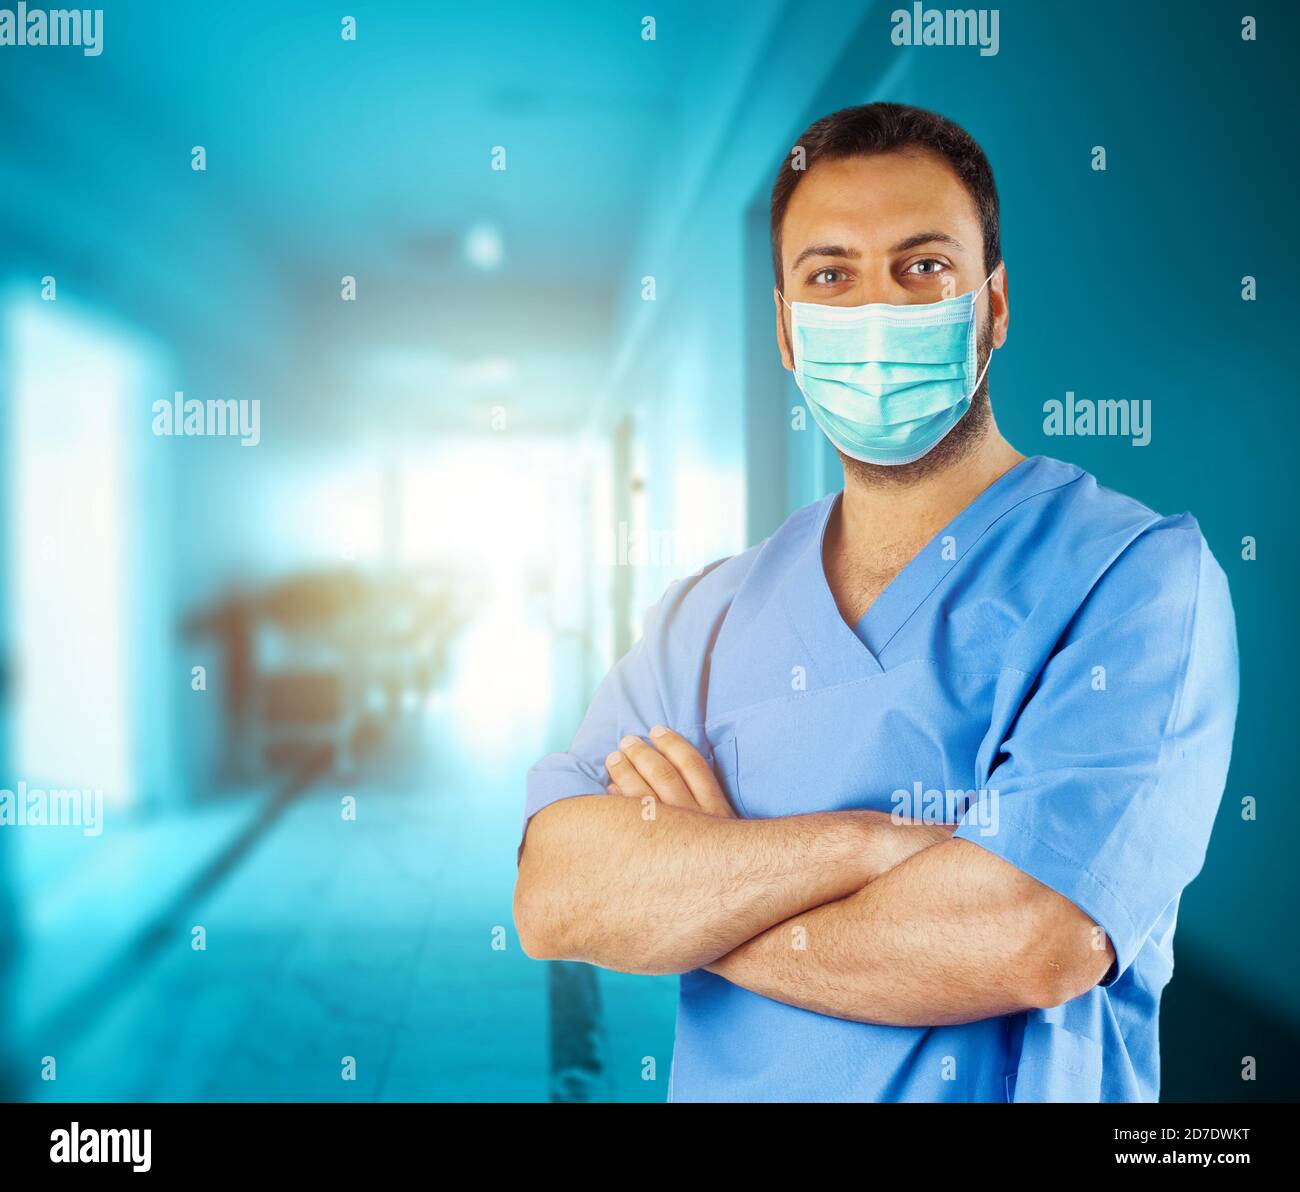 Porträt einer Krankenschwester oder eines Arztes in einem Krankenhaus, das eine chirurgische Maske trägt. Stockfoto